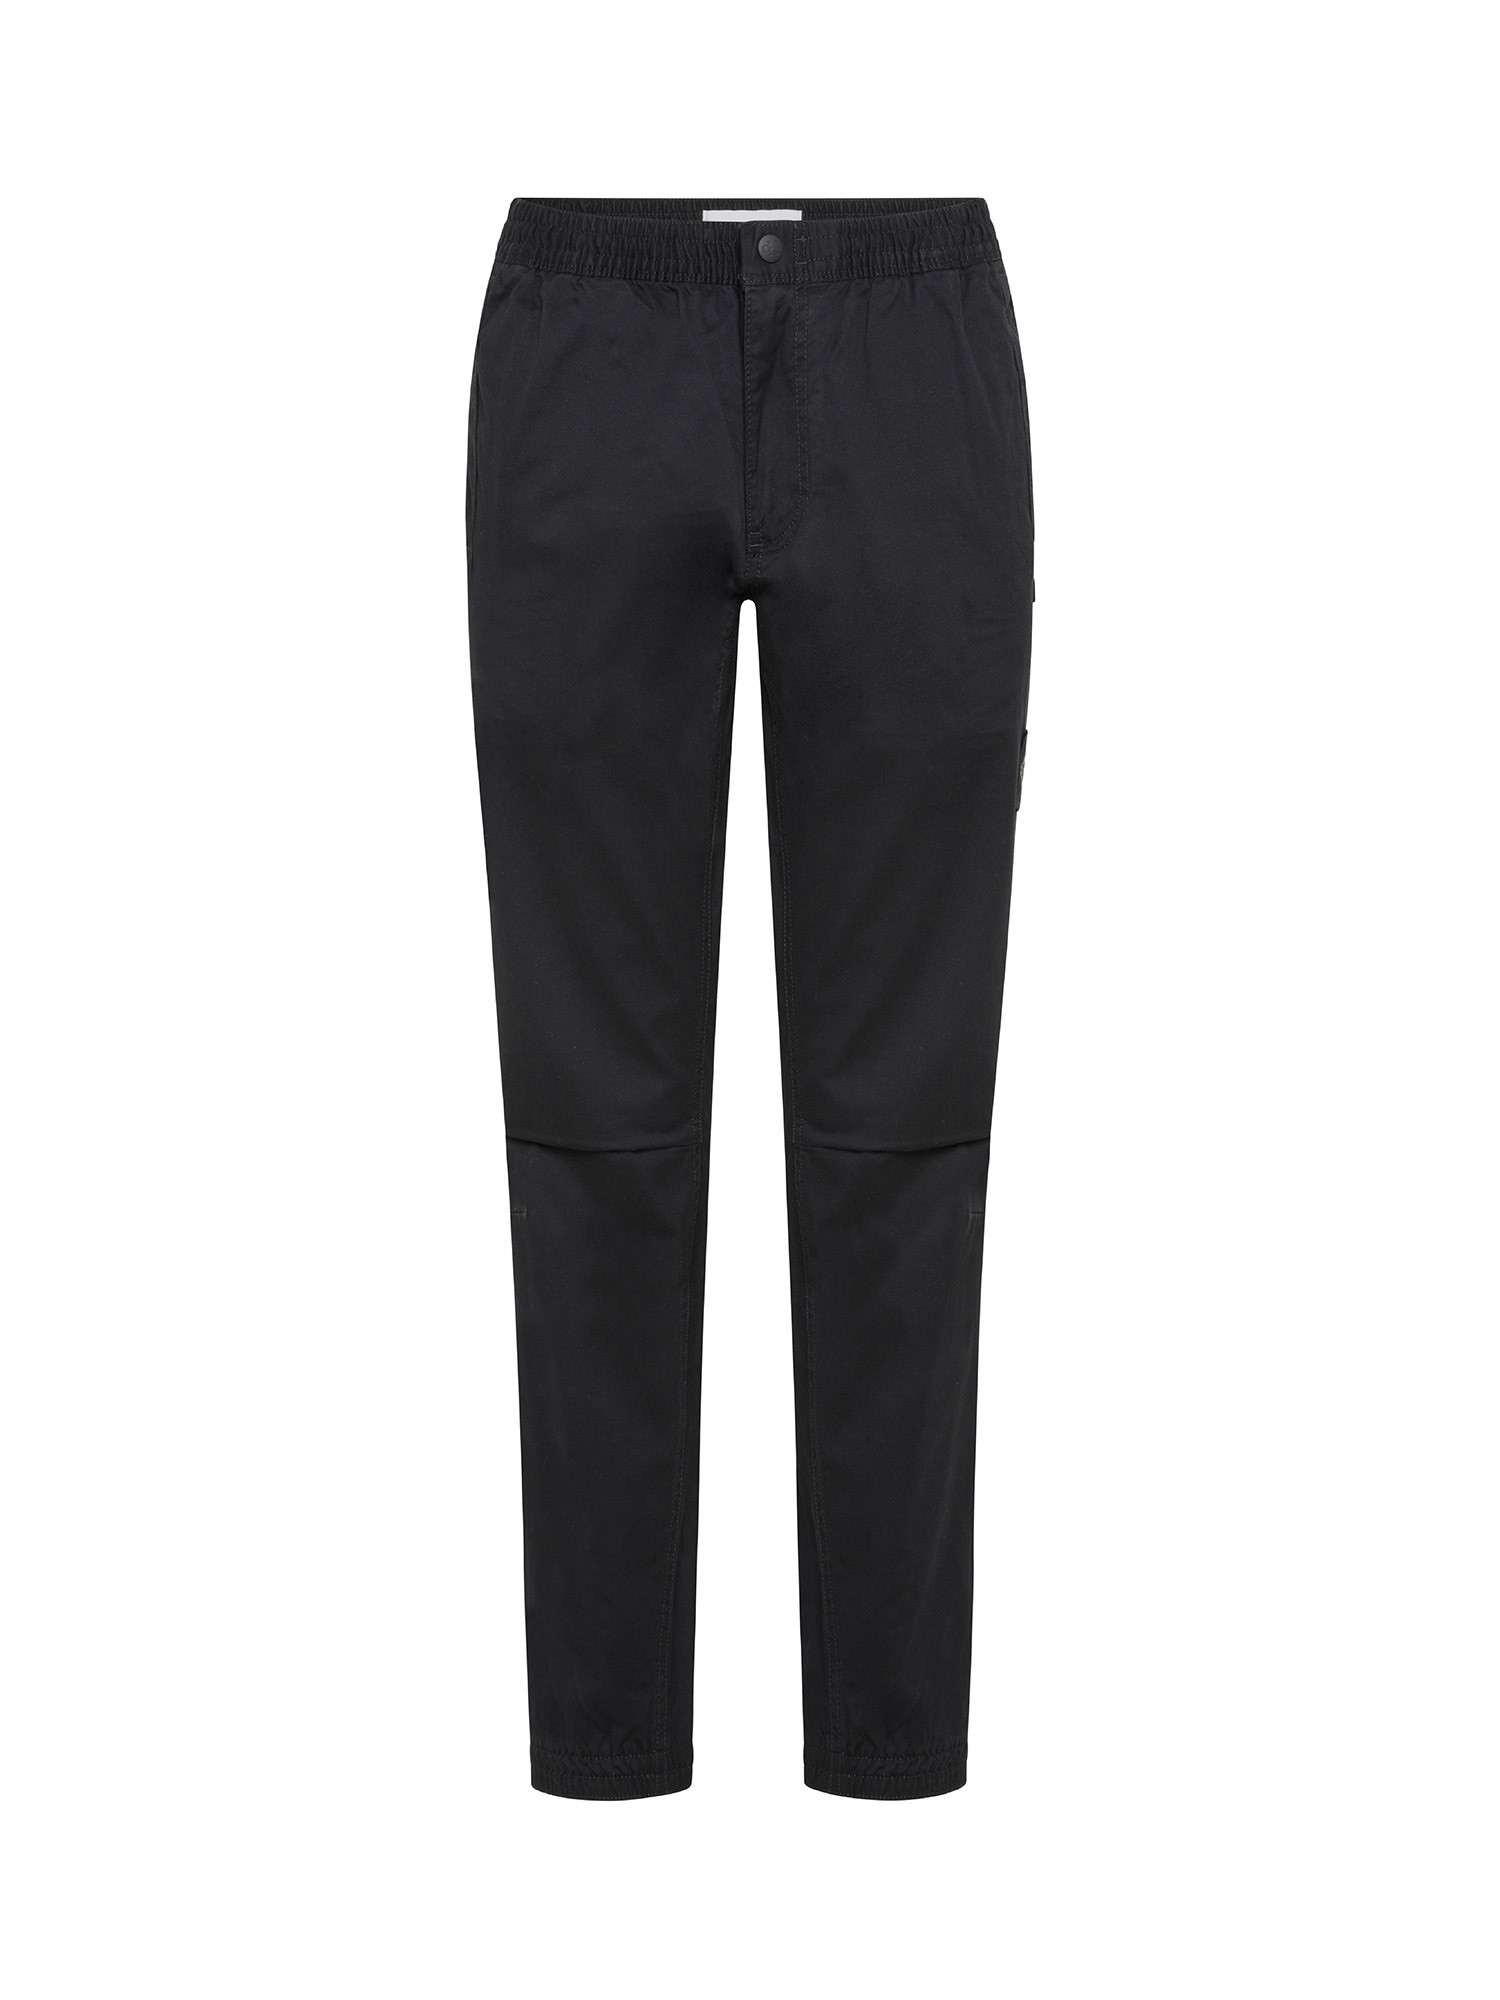 Calvin Klein Jeans - Pantaloni chino, Nero, large image number 0